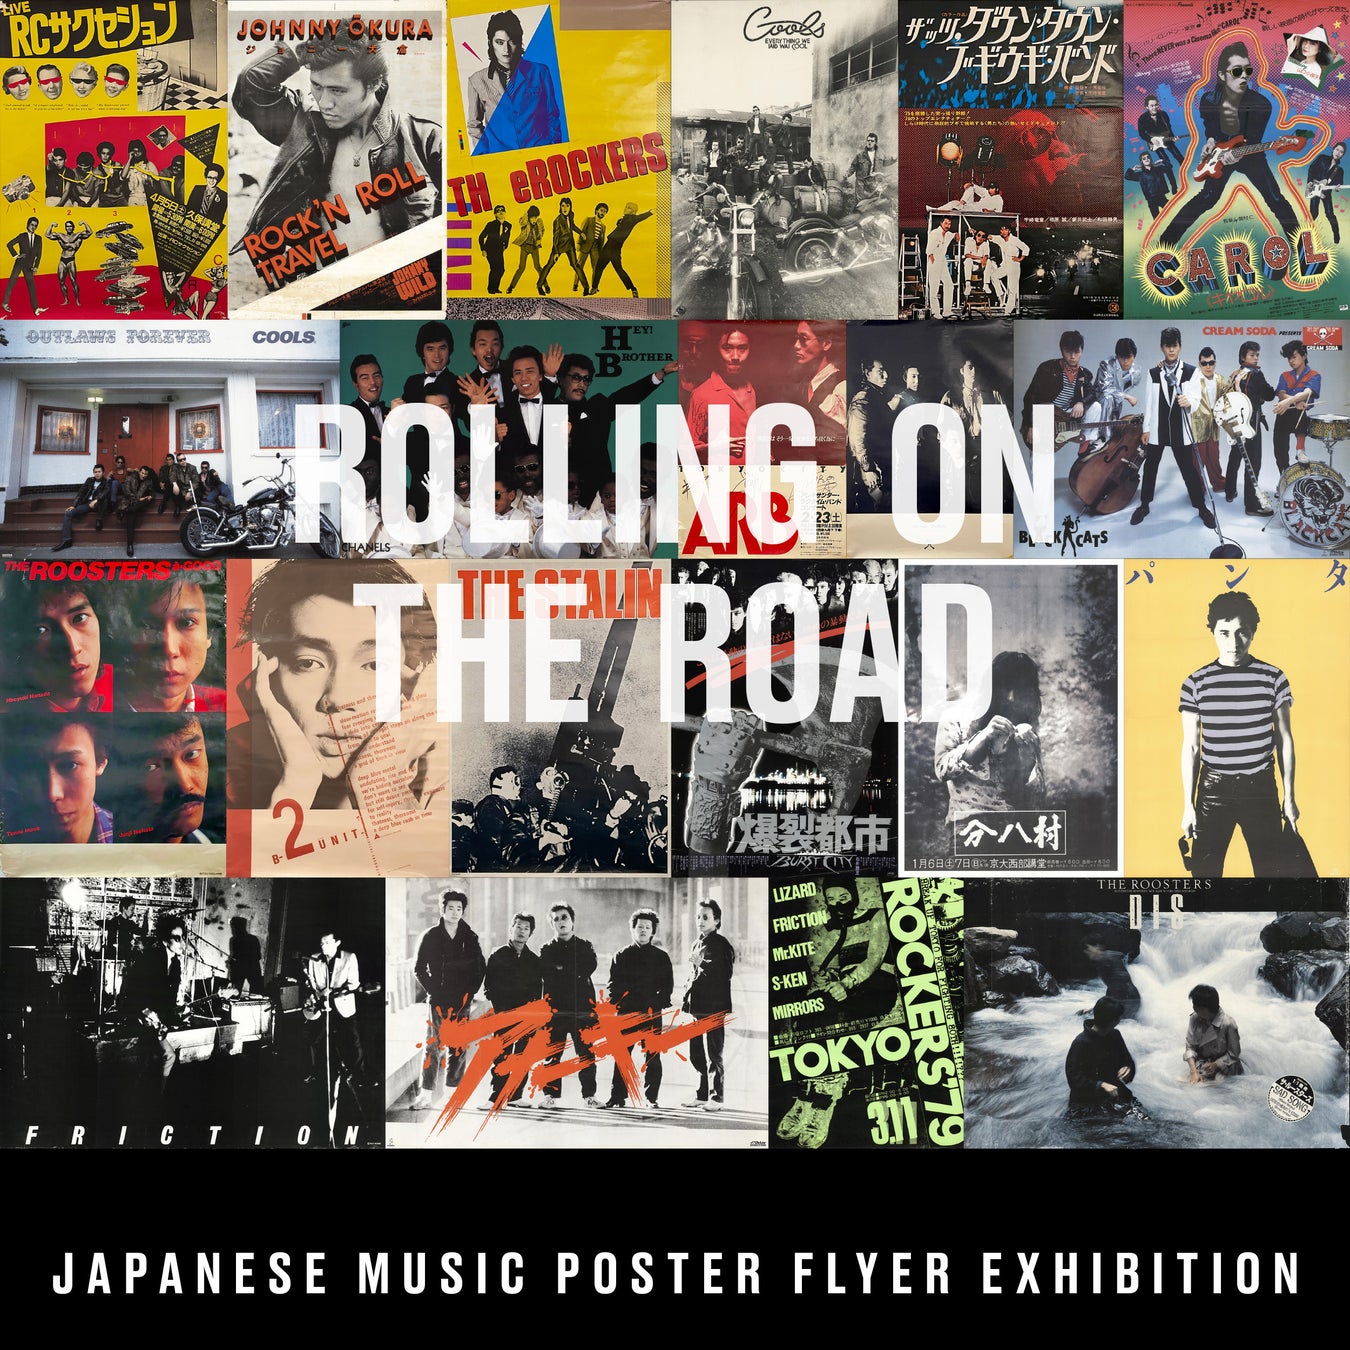 音楽プロデューサー井出靖の自伝本の発刊を記念し、2/11(土)より、1970’s-80’sの日本のロックをメインにポスター、チラシ展の展覧会を開催！